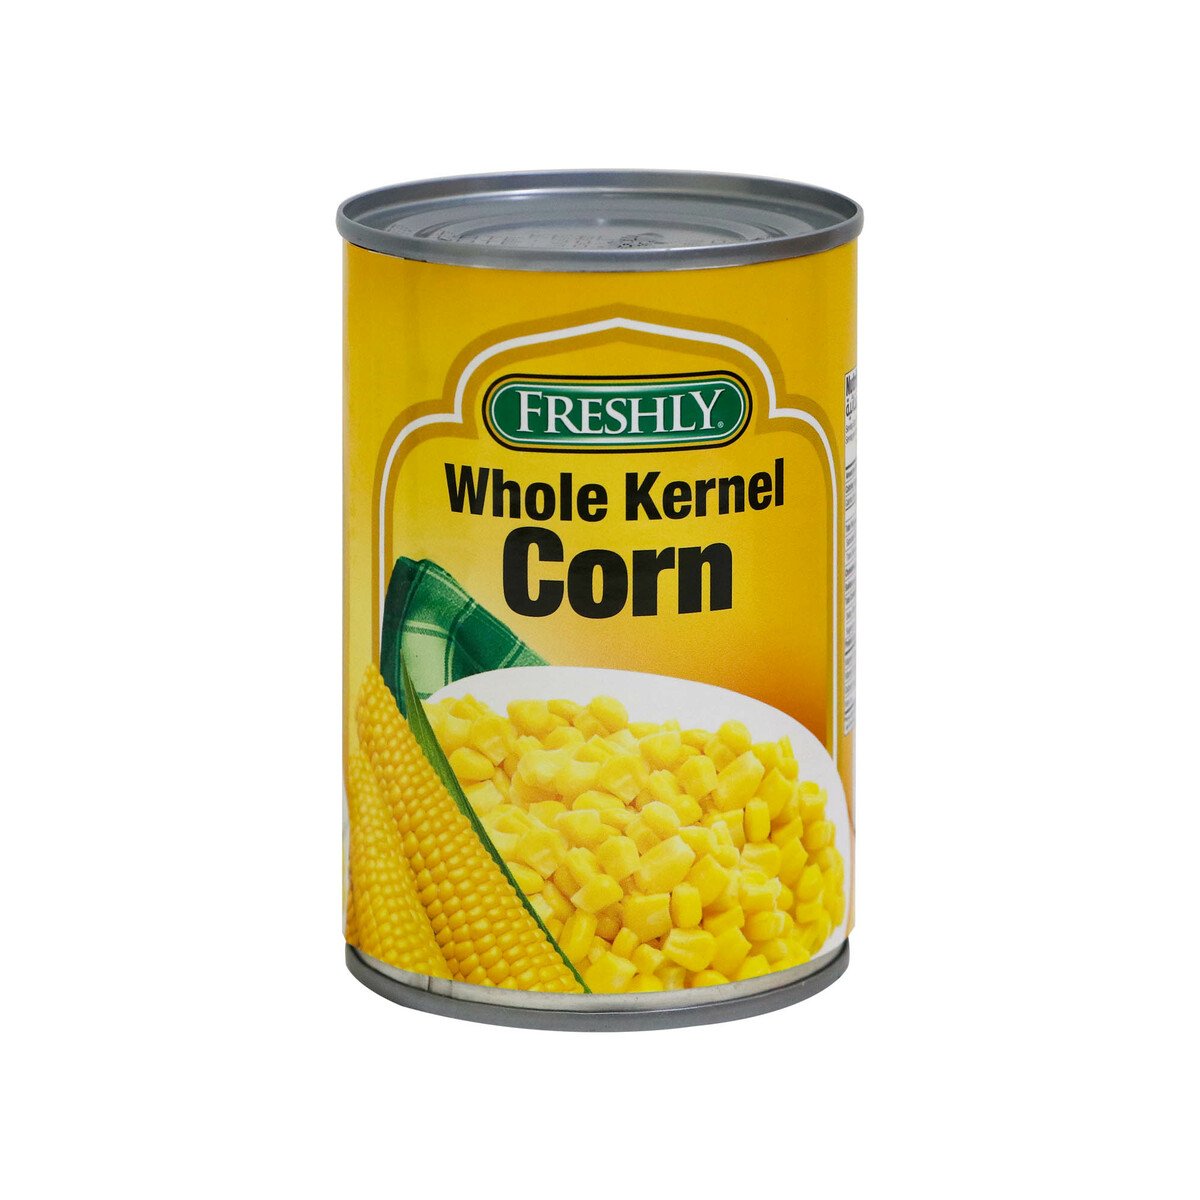 Freshly Whole Kernel Corn 15oz